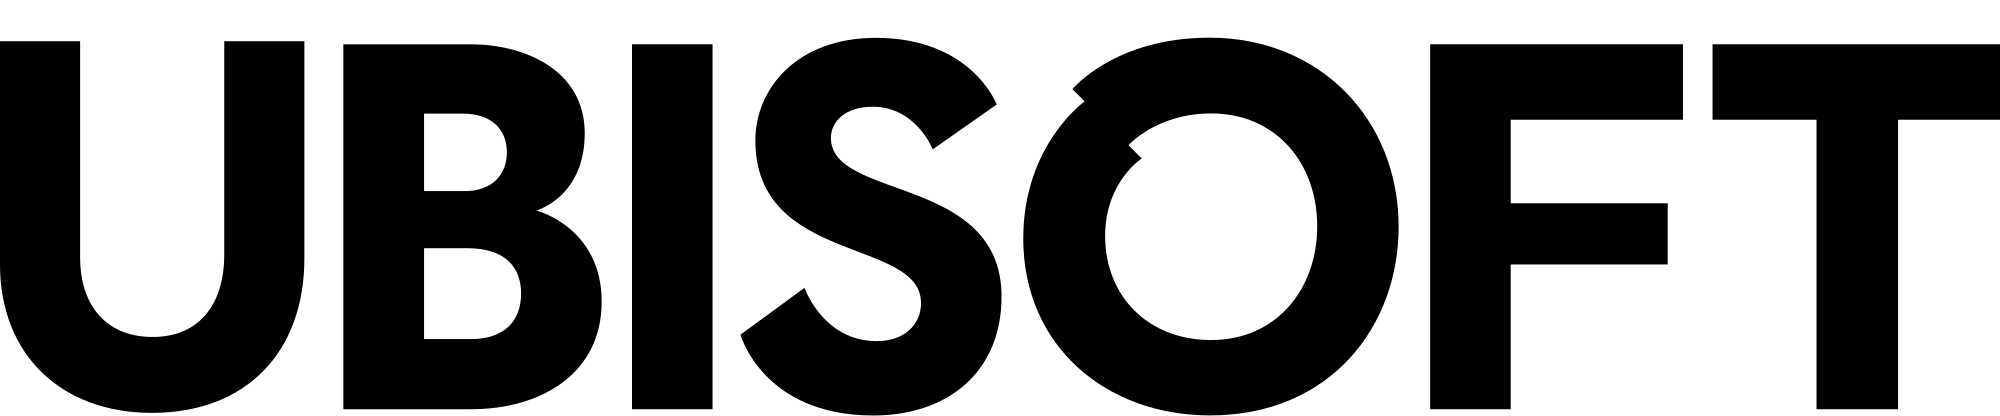 2000px-Ubisoft_logo.svg.png